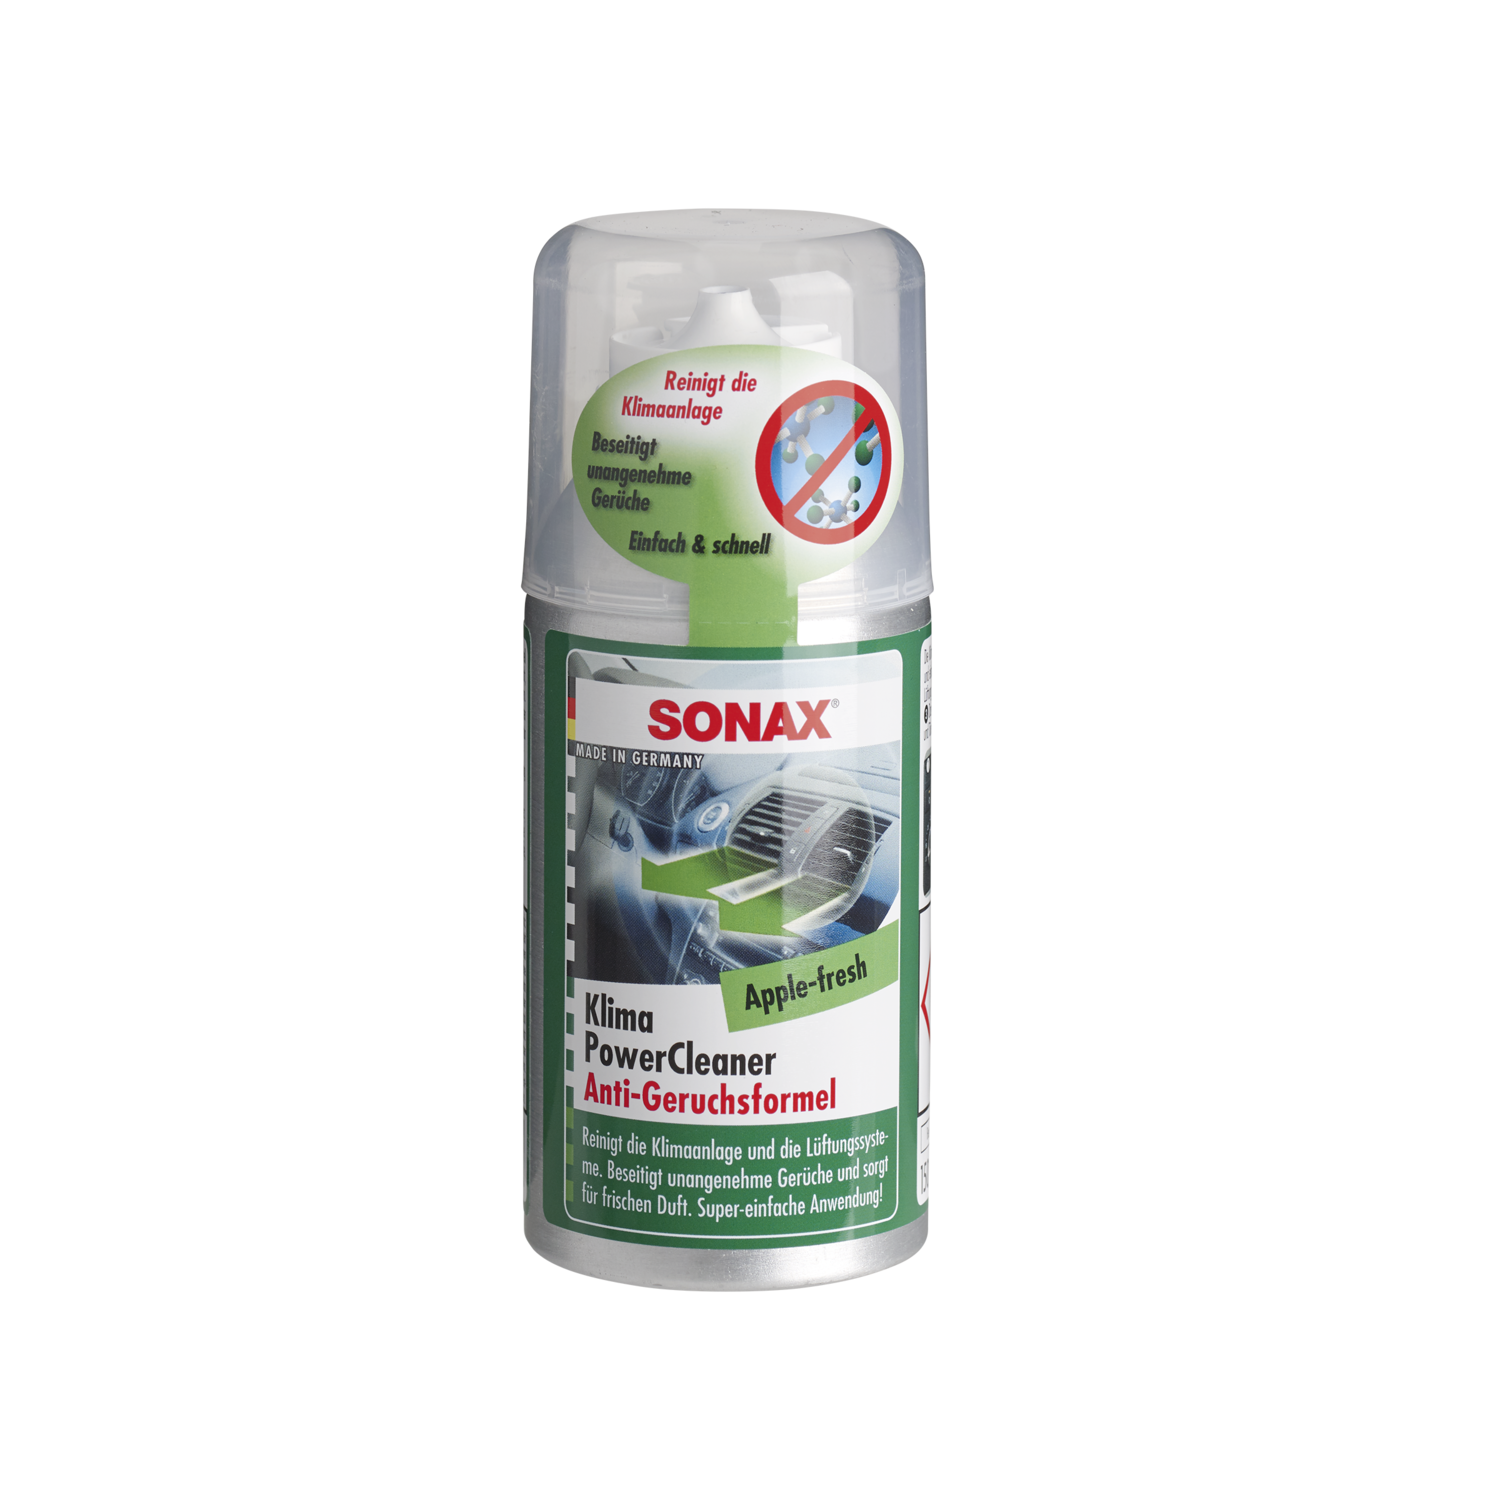 SONAX KlimaPowerCleaner Apple-Fresh Air conditioner cleaner